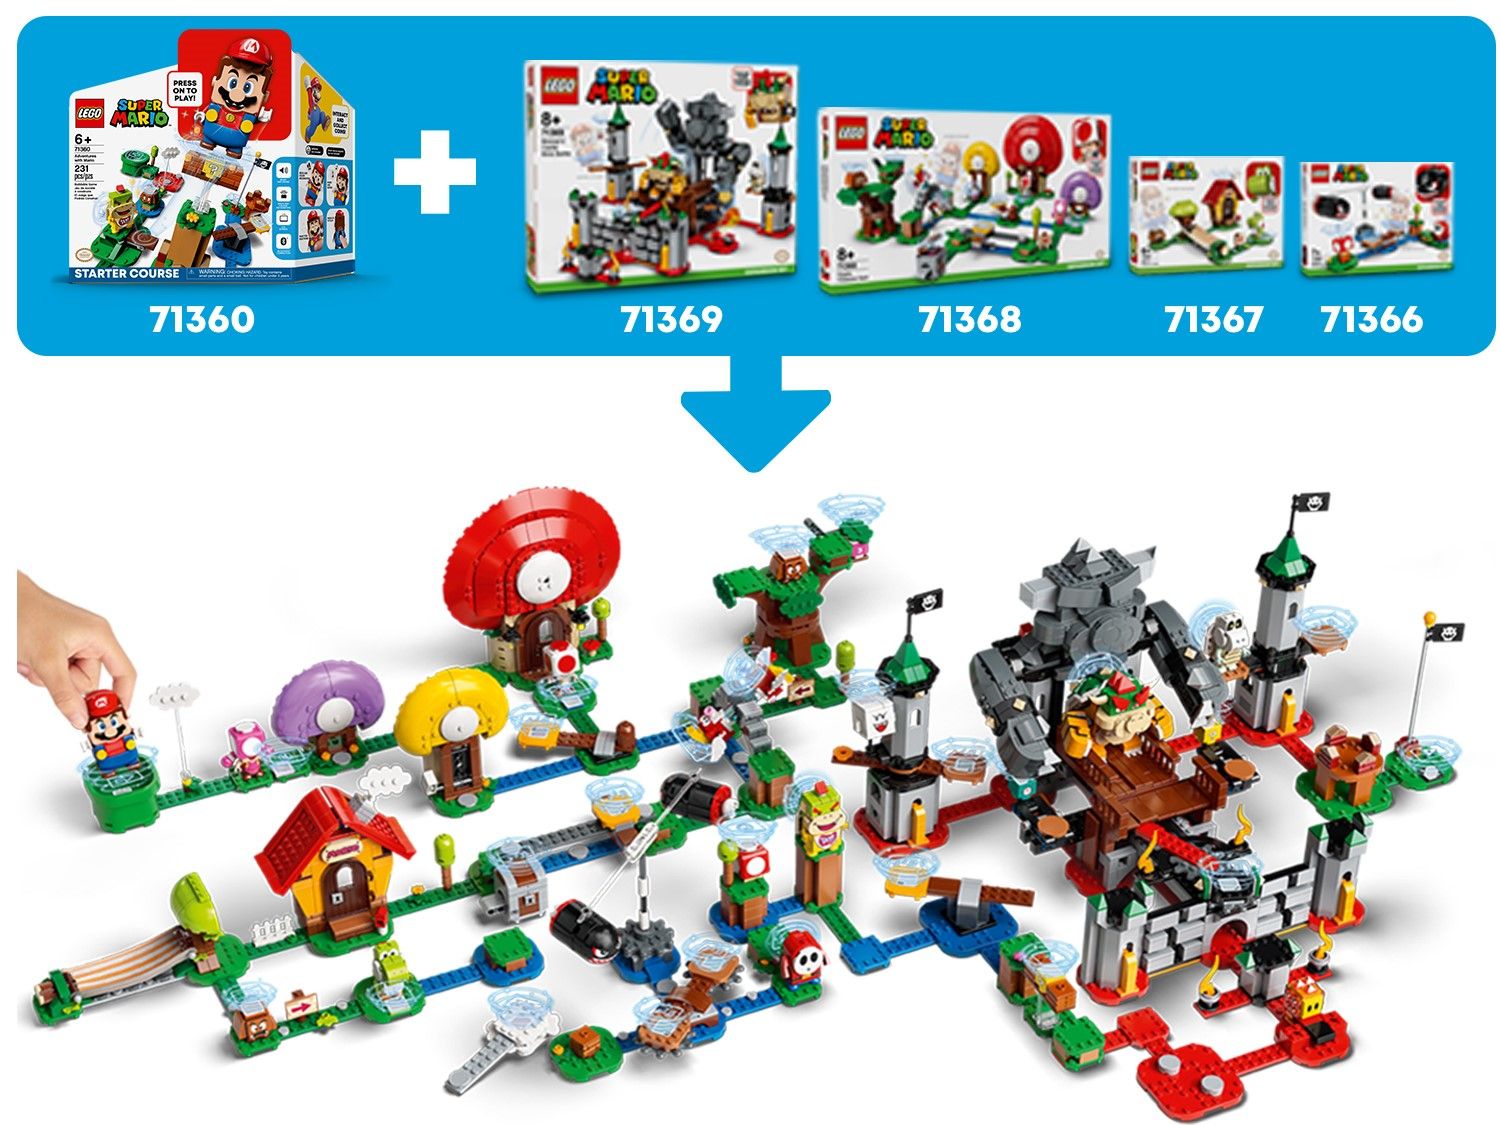 LEGO Super Mario 71367 Marios Haus und Yoshi – Erweiterungsset LEGO_71367_alt4.jpg